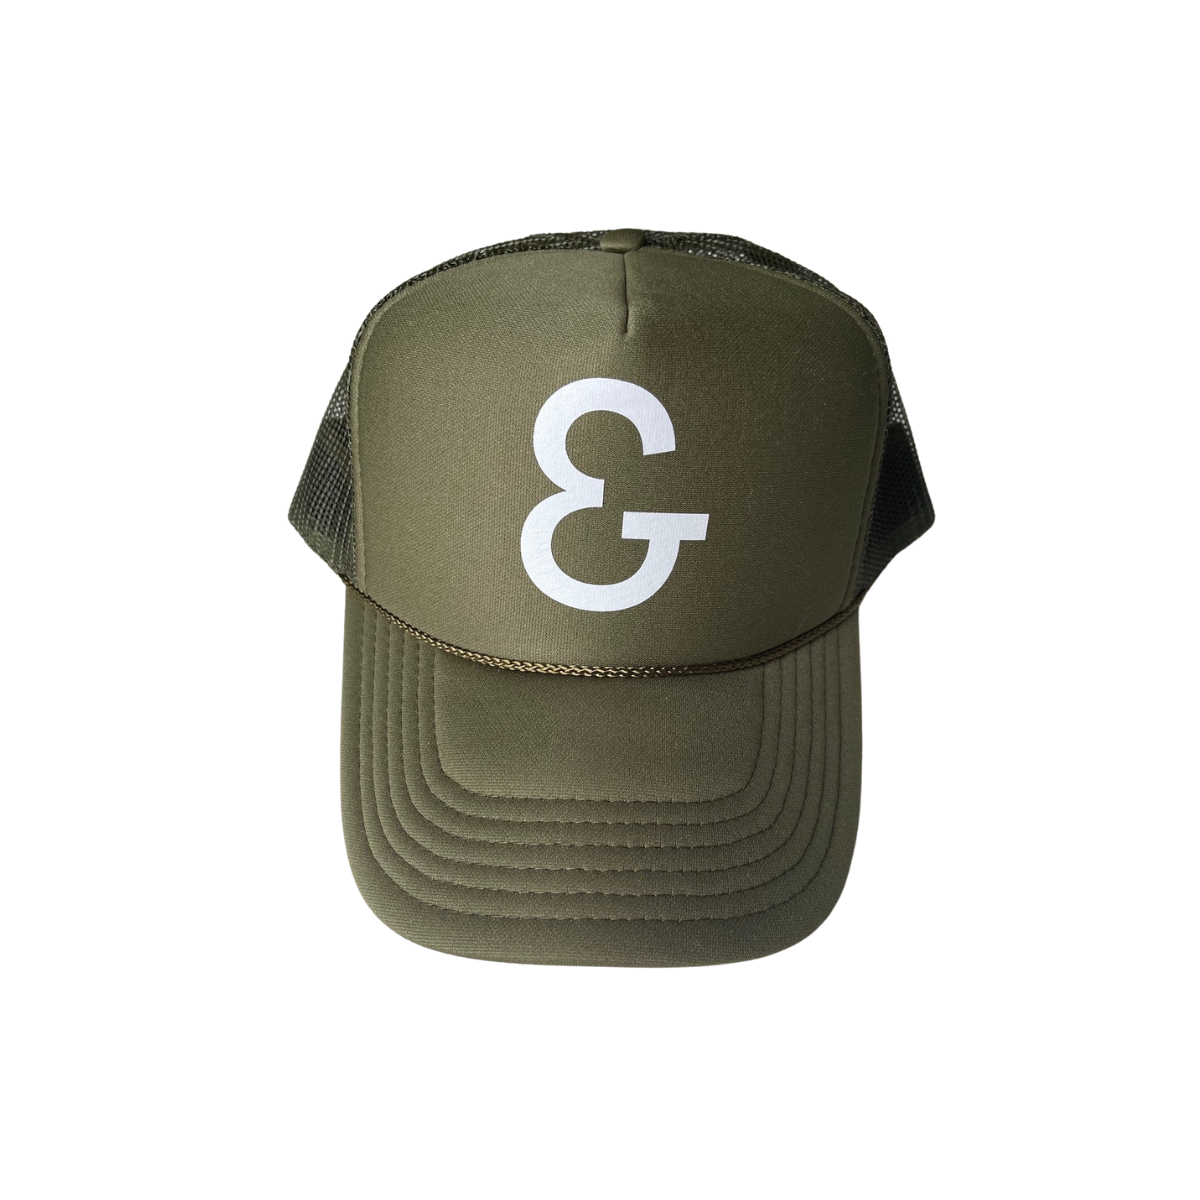 ERIN & CO Trucker Hat - Army Green